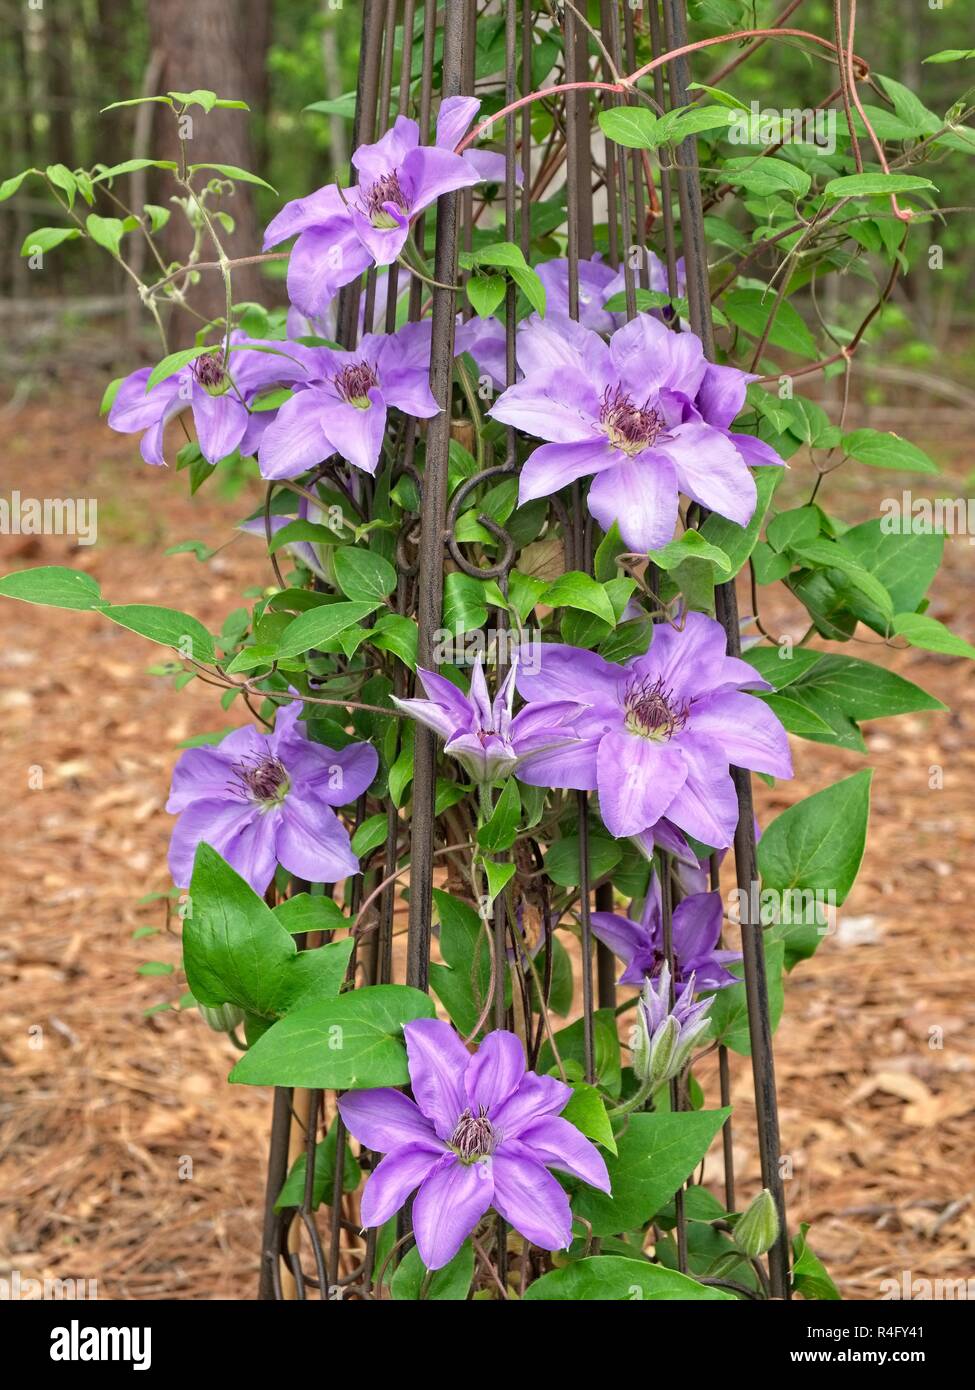 Clematide viola o regina dei vigneti, una vite rampicante, che cresce su una verticale di traliccio metallico in un giardino nel centro di Alabama. Foto Stock